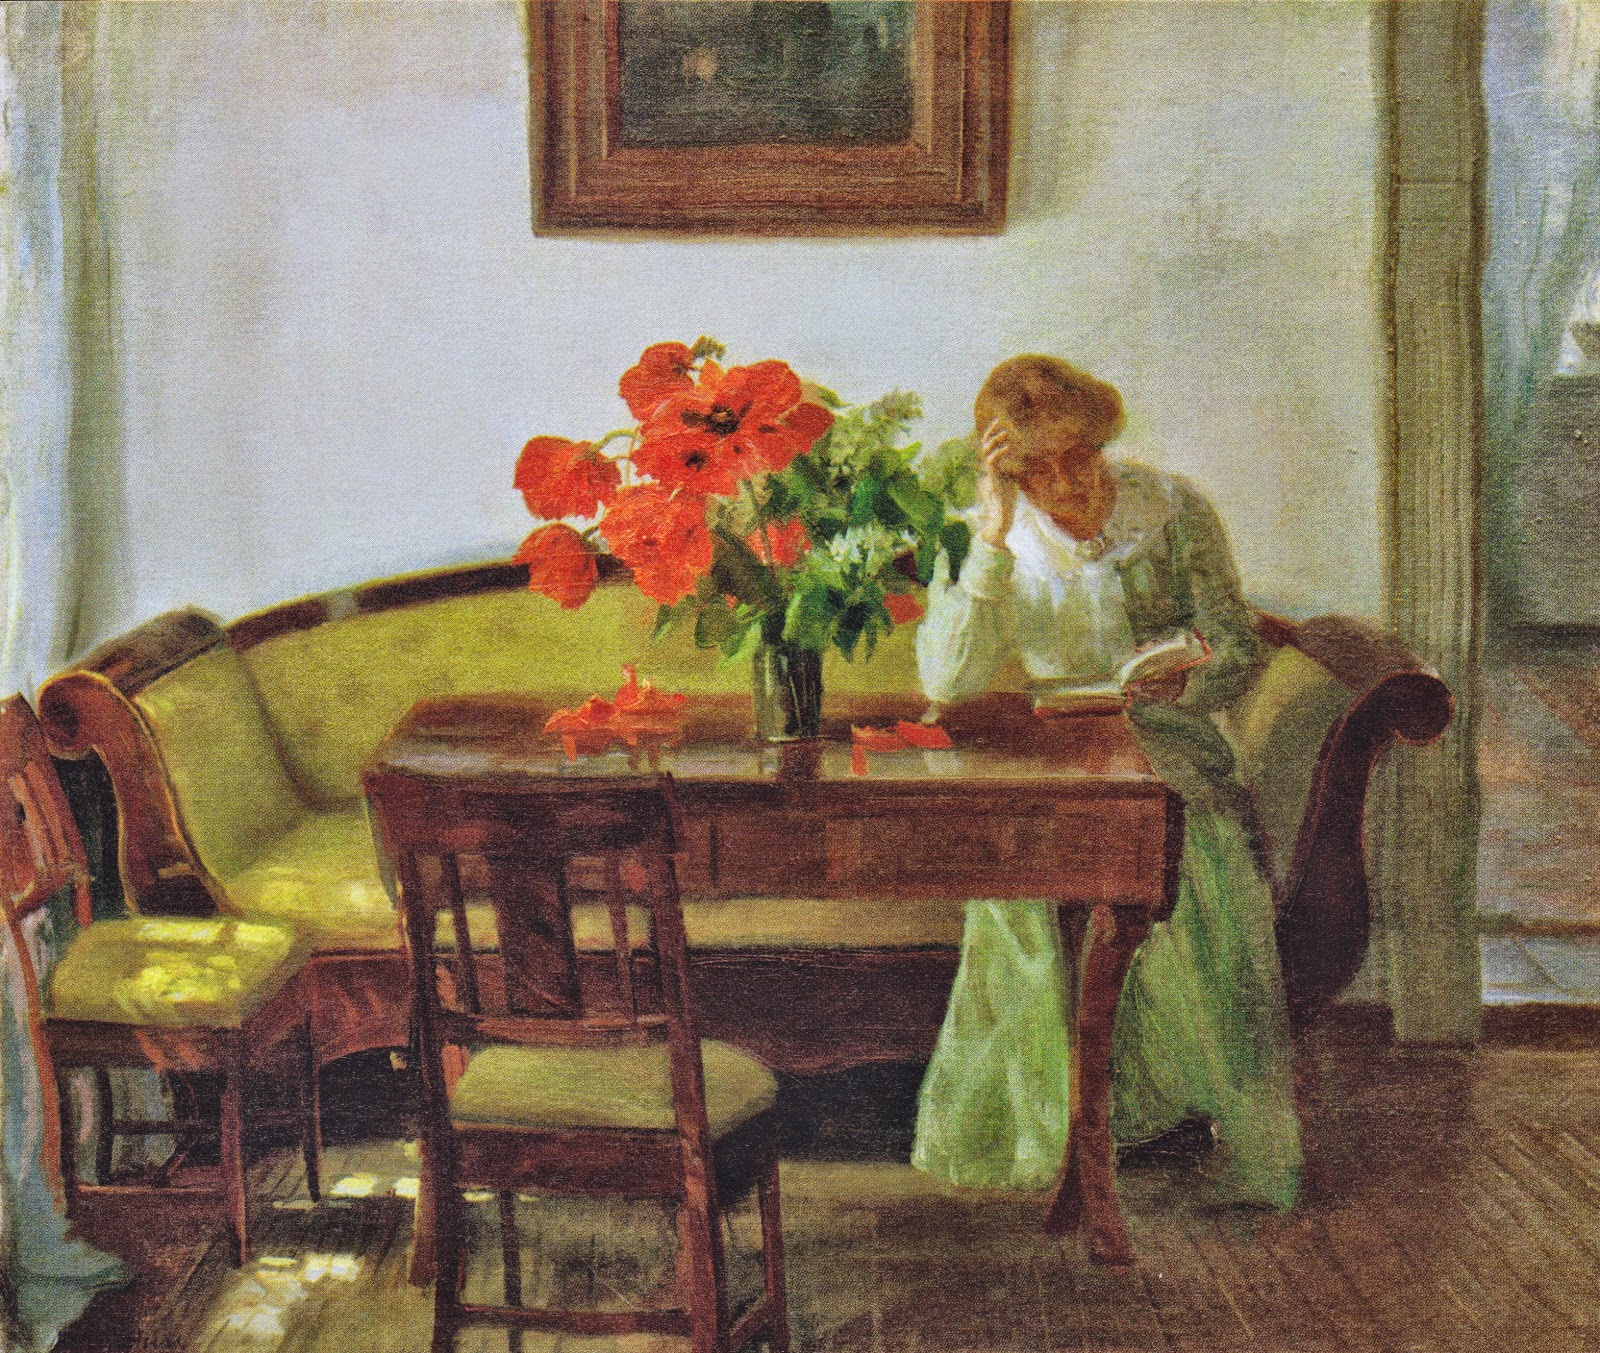 Anna+Ancher-1859-1935 (1).jpeg